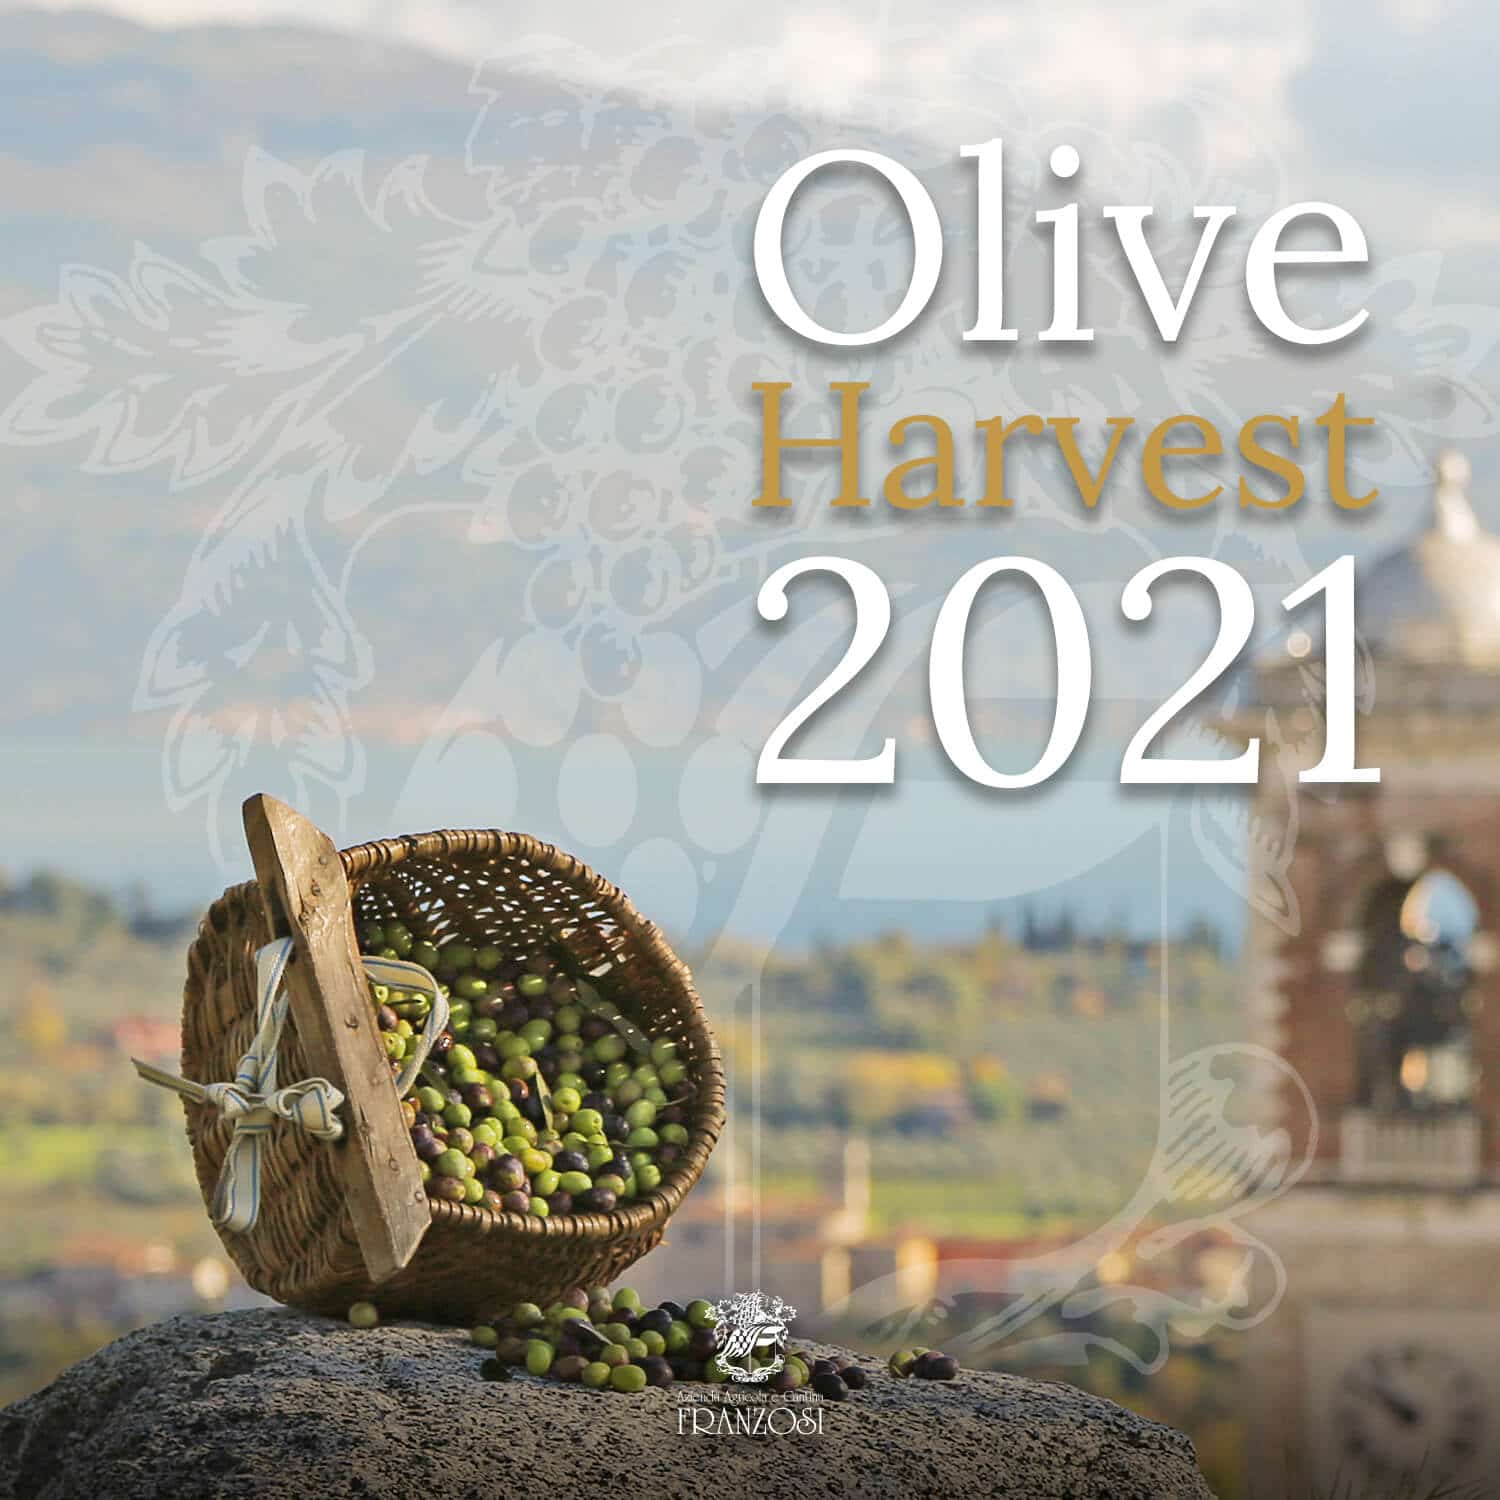 Olive harvest in Valtènesi 2021